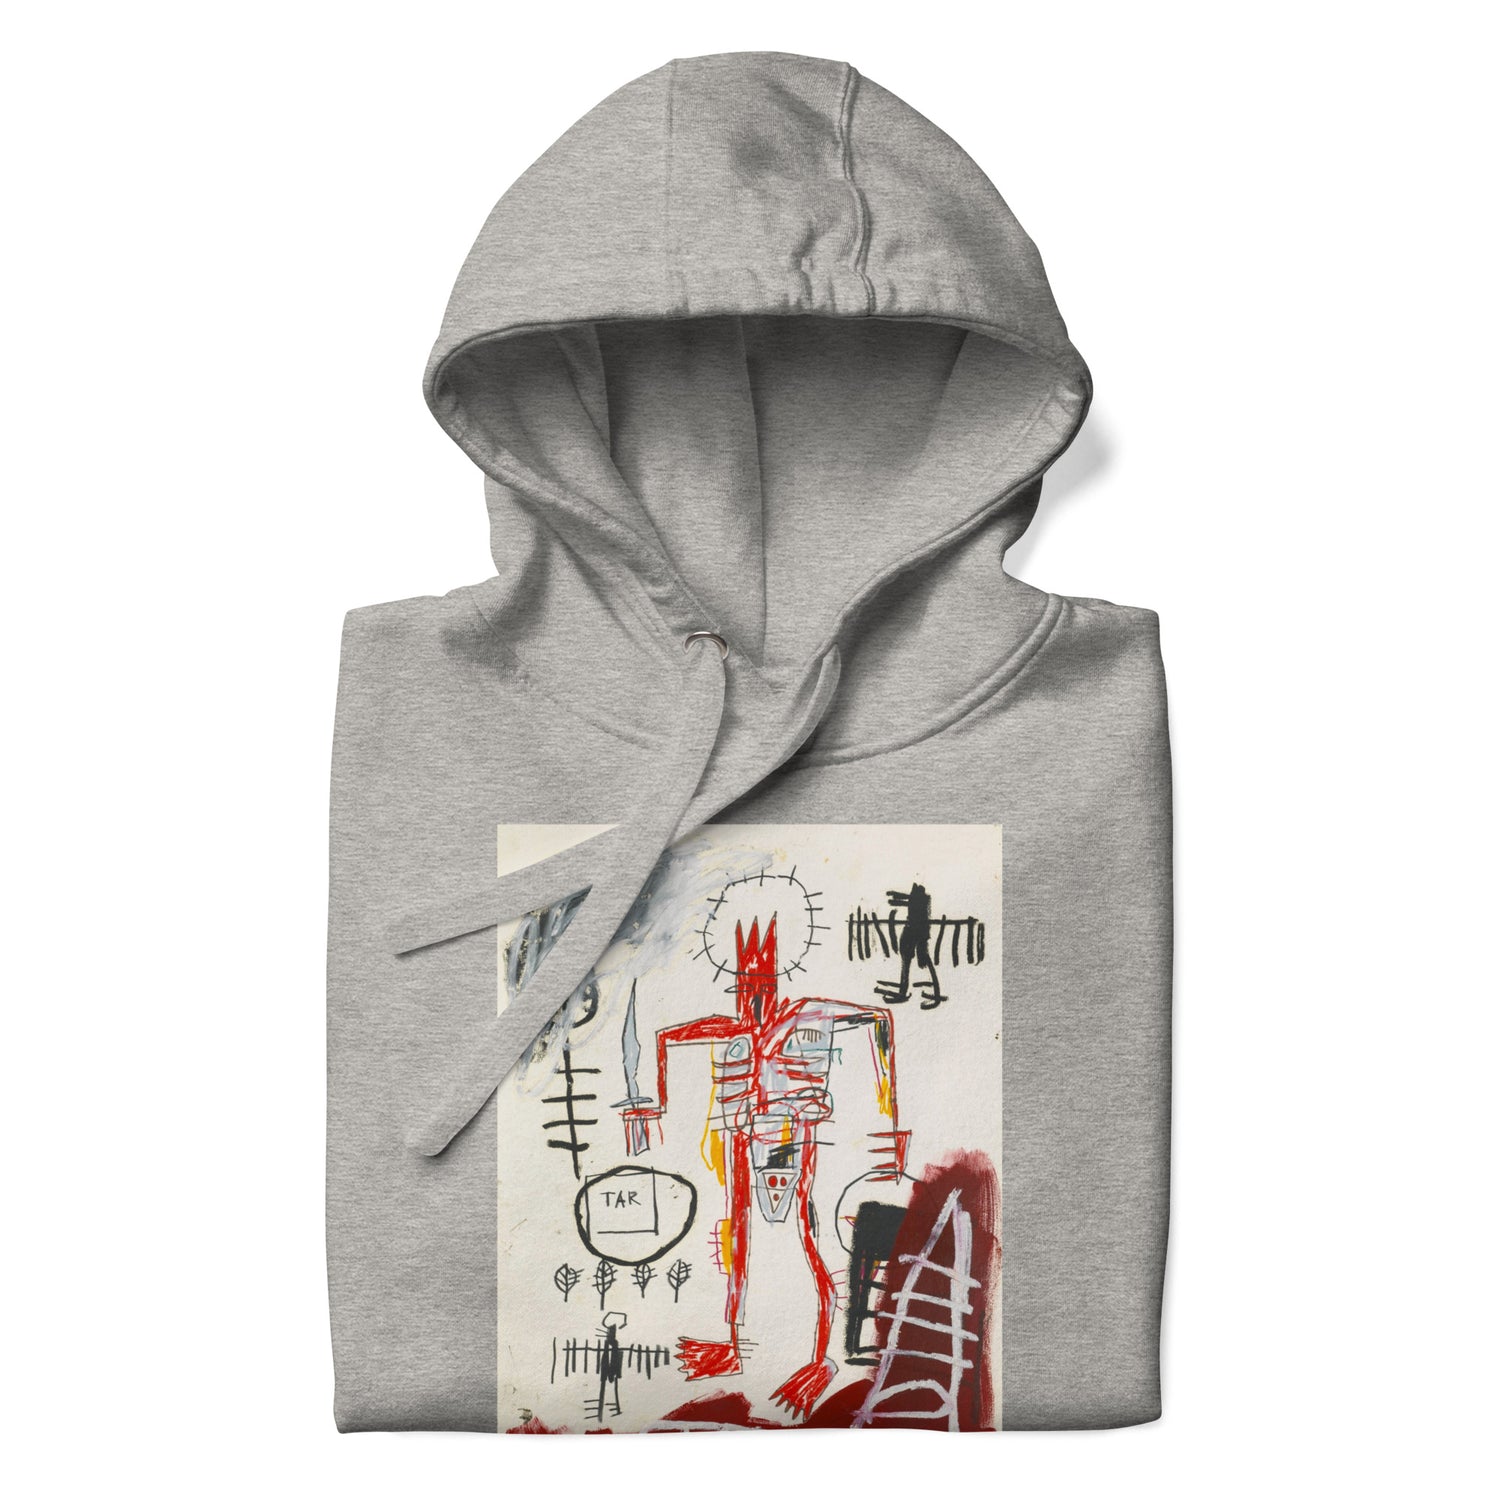 Jean-Michel Basquiat "Untitled" Artwork Printed Premium Streetwear Sweatshirt Hoodie Grey